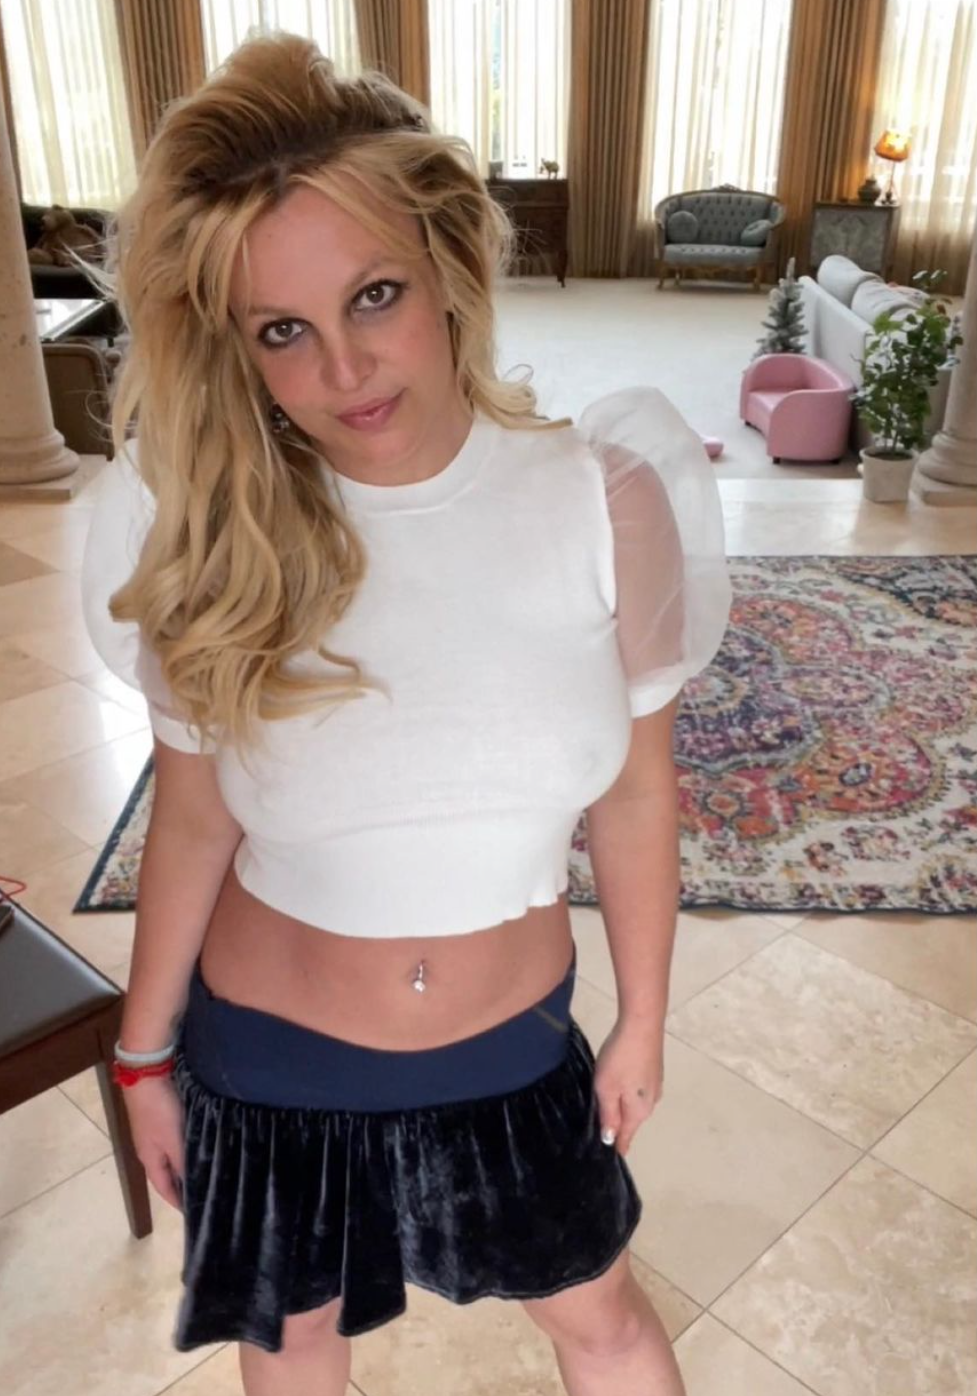 Őrületes lesifotók láttak napvilágot Britney Spears esküvőjéről